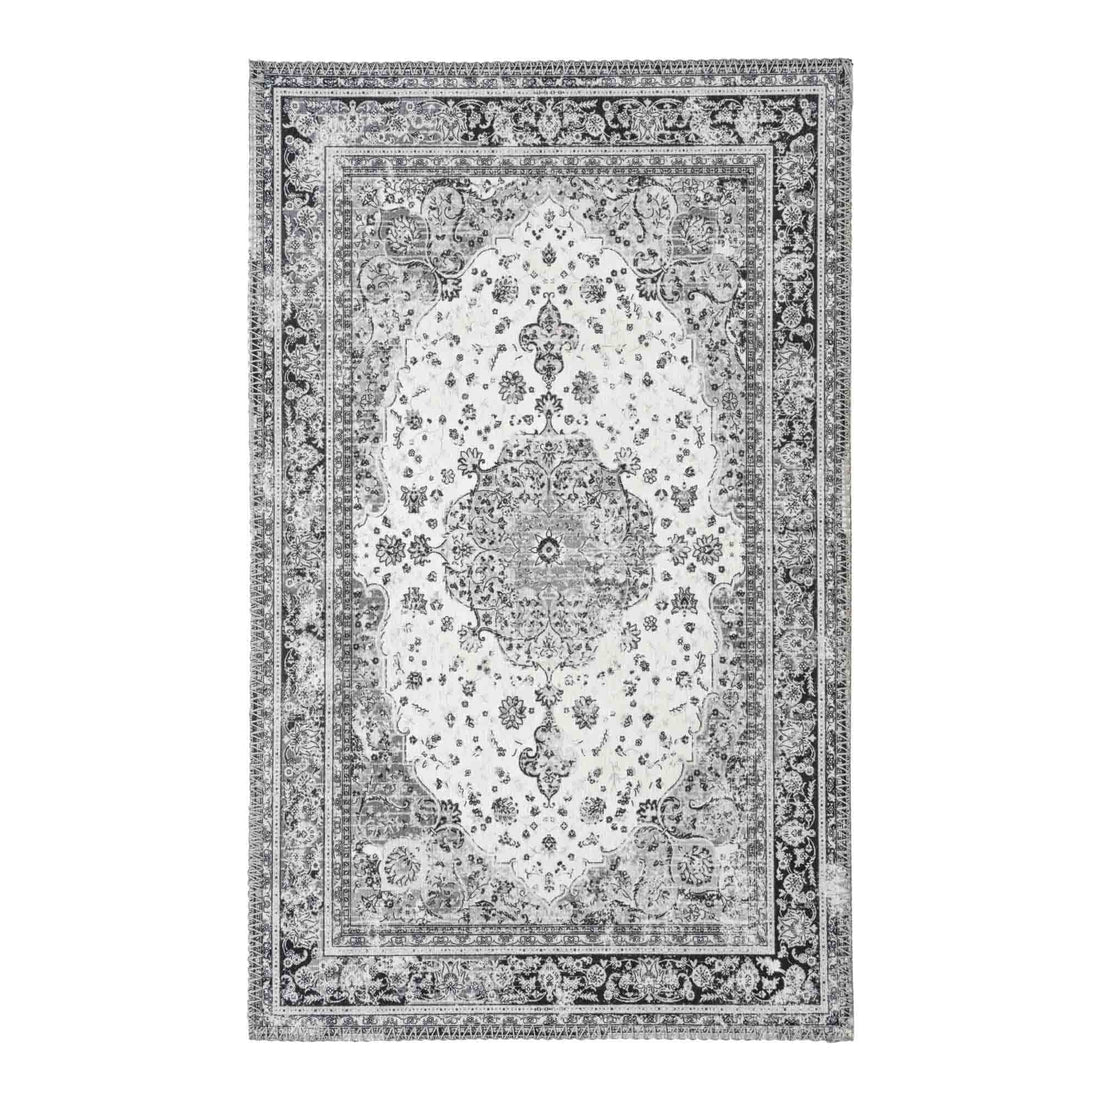 Havana doormat - doormat, black and white, 50x80 cm - 1 - pcs